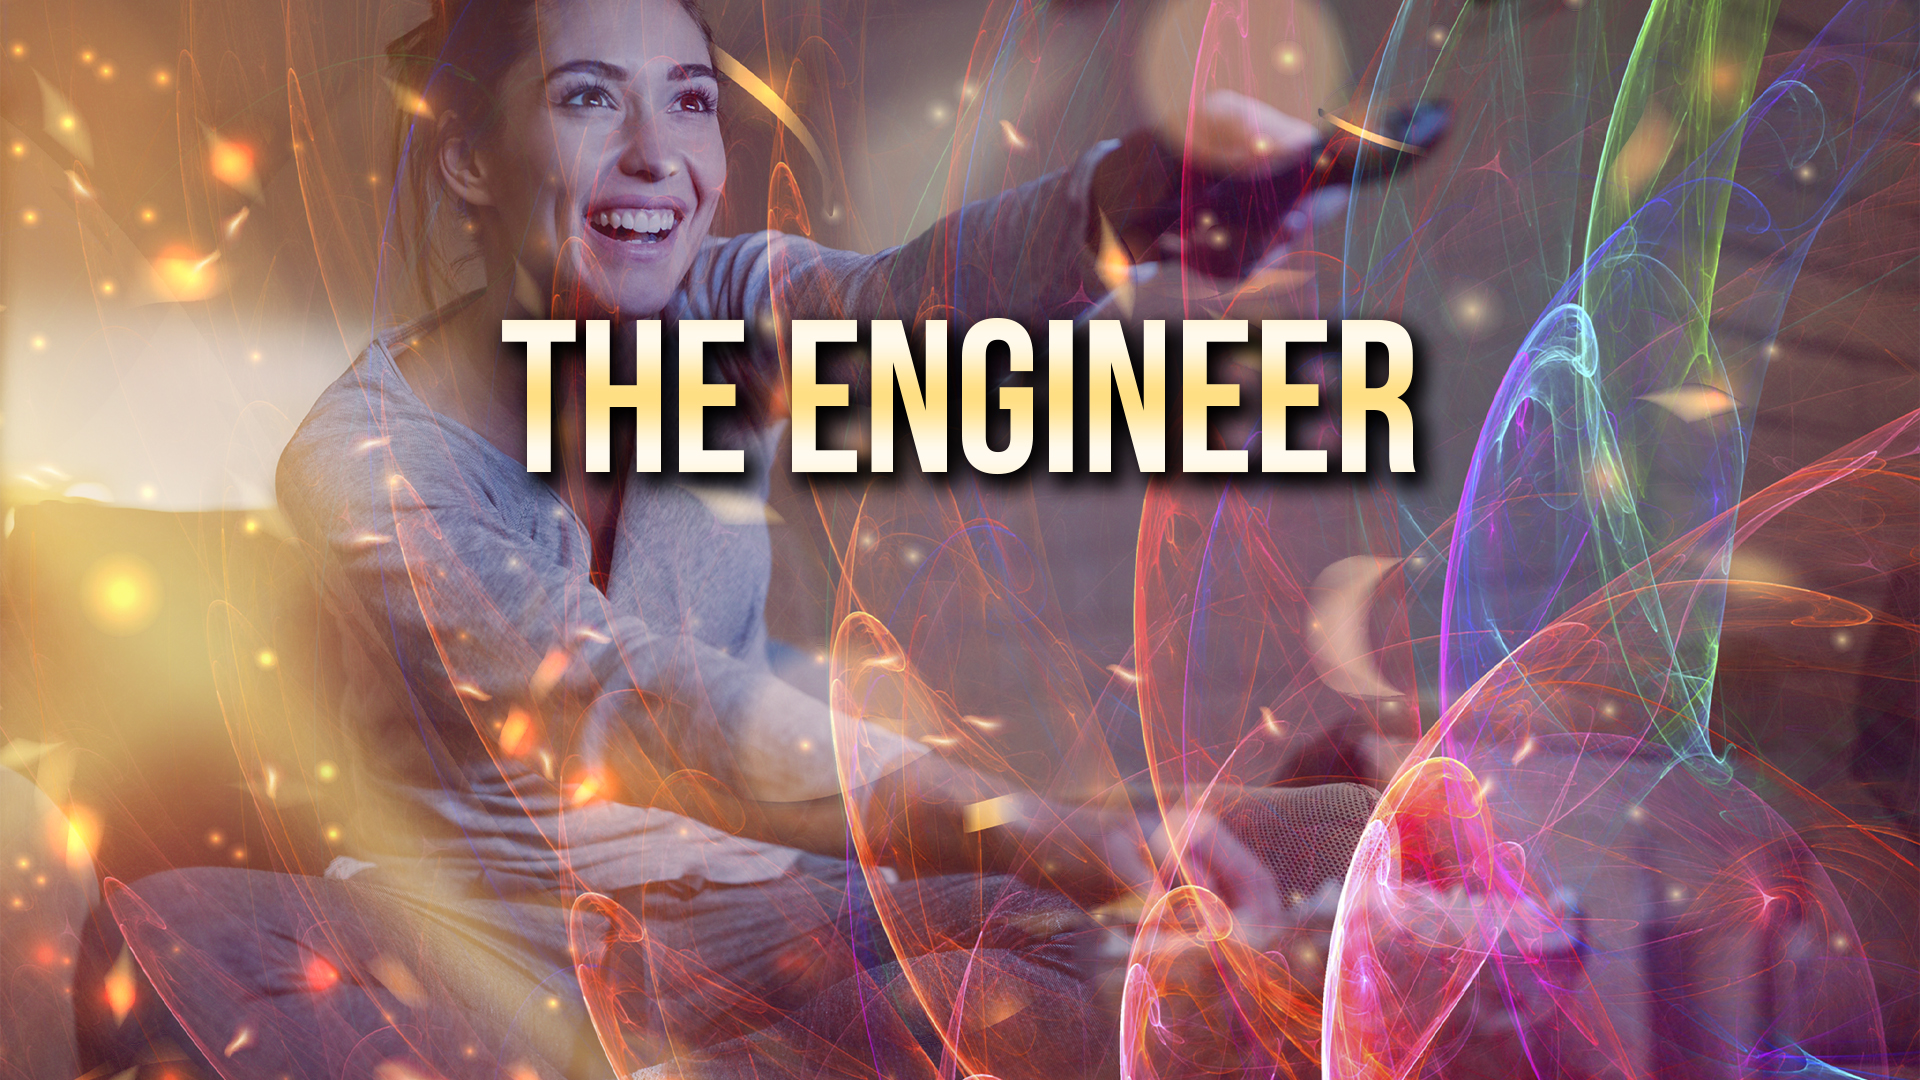 The Engineer Ending Explained [SPOILER!]